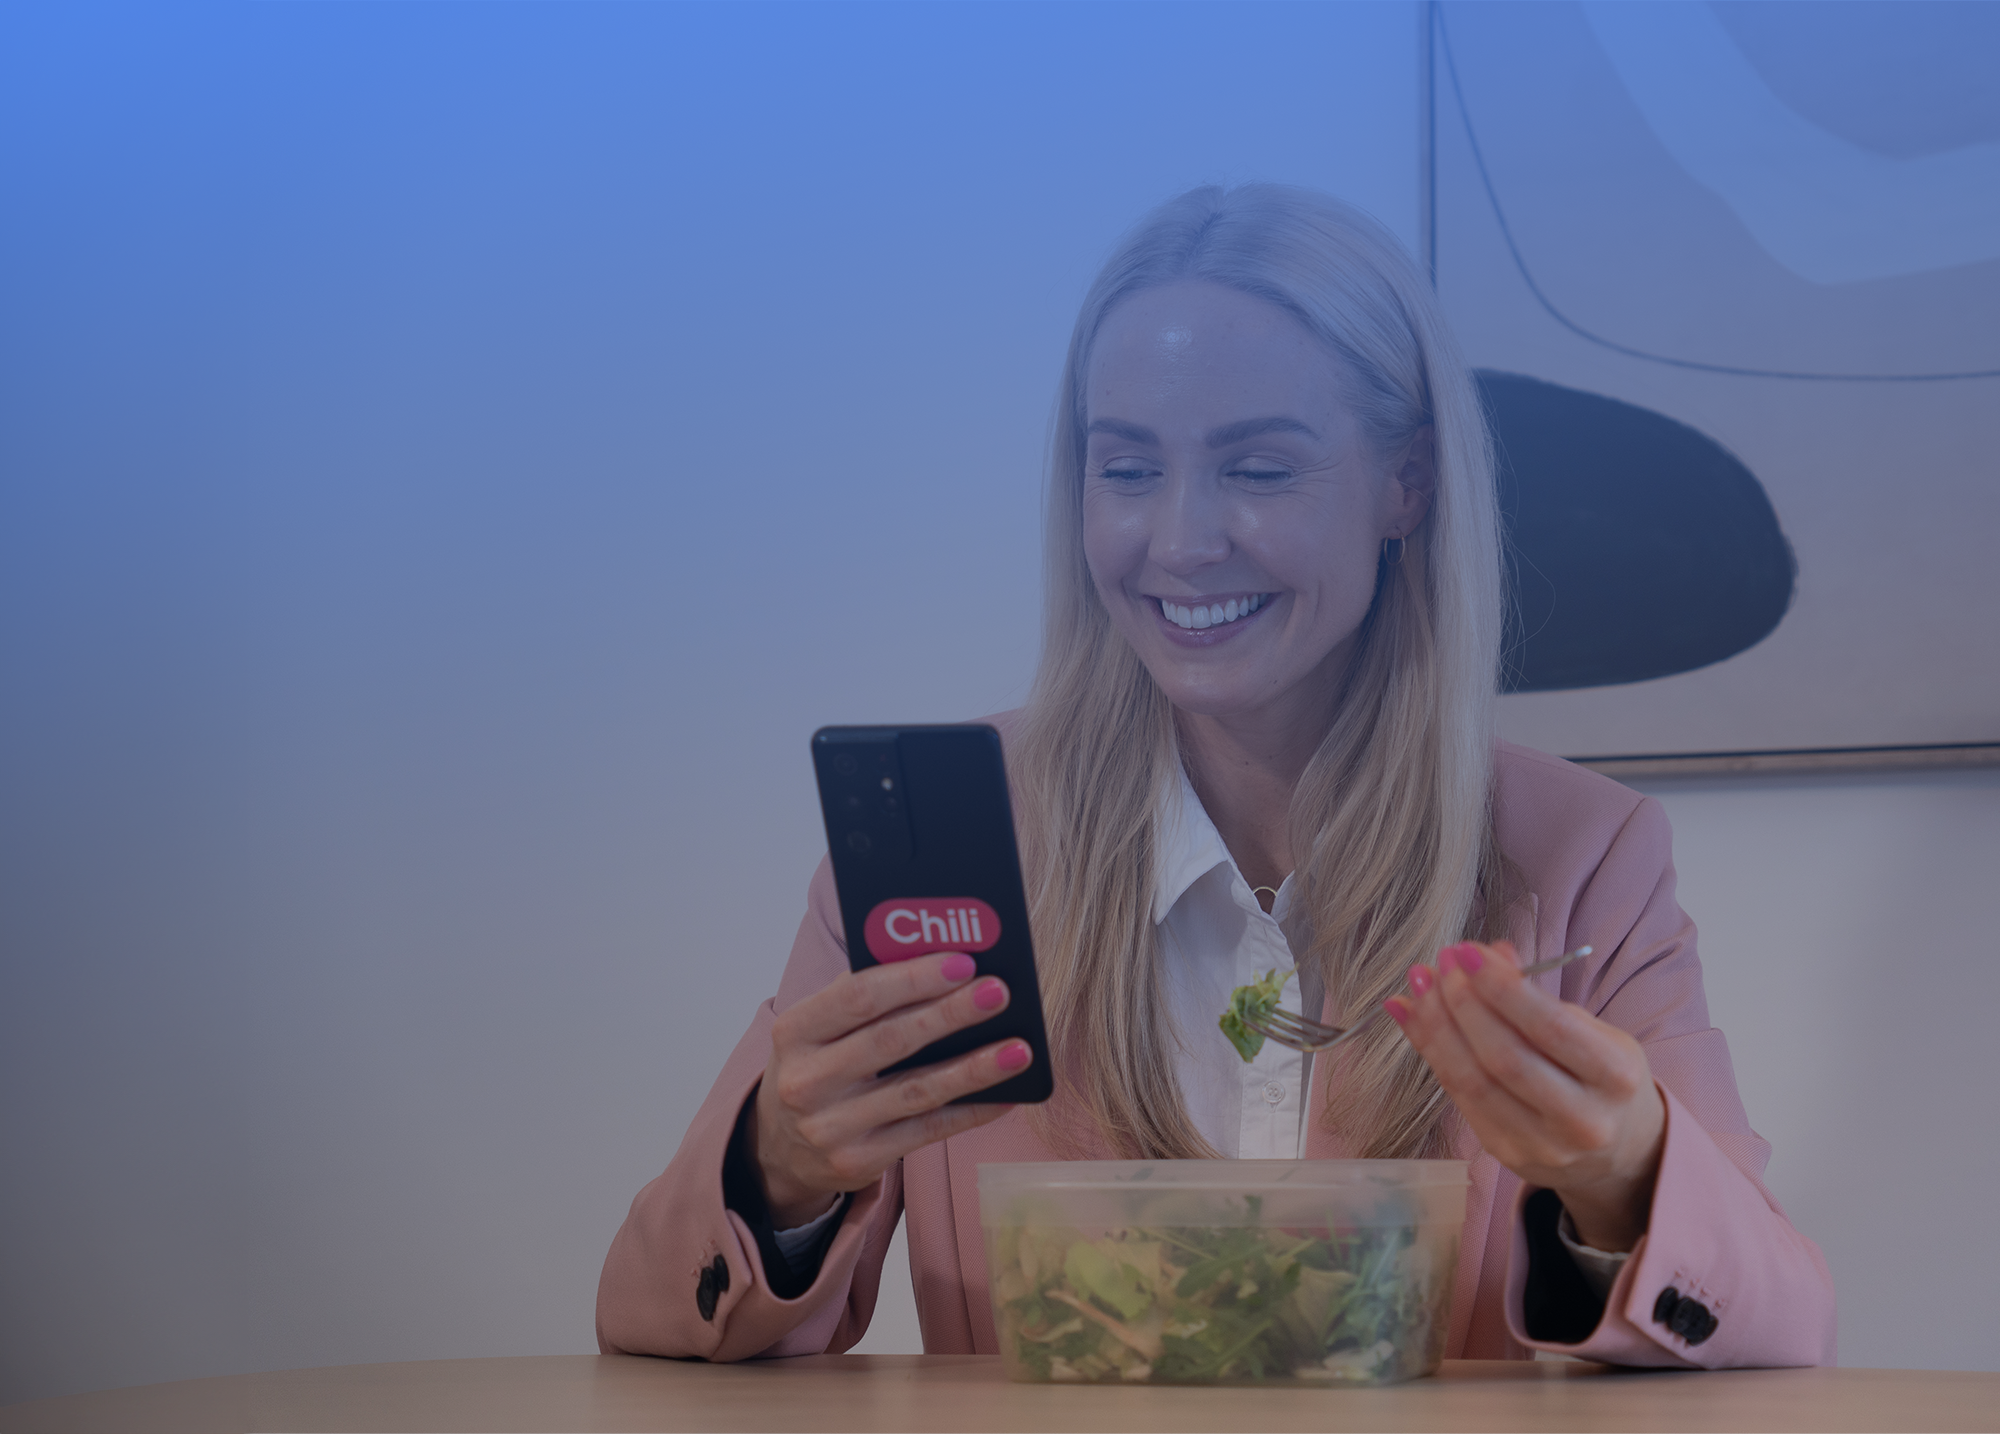 En smilende kvinne som holder en mobiltelefon med en logo som sier "Chili". Hun har blondt hår, har på seg en lys rosa blazer over en hvit skjorte, og spiser salat fra en klar plastboks. Kvinnen er inne, med en moderne kunstig bakgrunn som inneholder myke blå toner og en abstrakt, mørk form. Atmosfæren er avslappet og moderne.